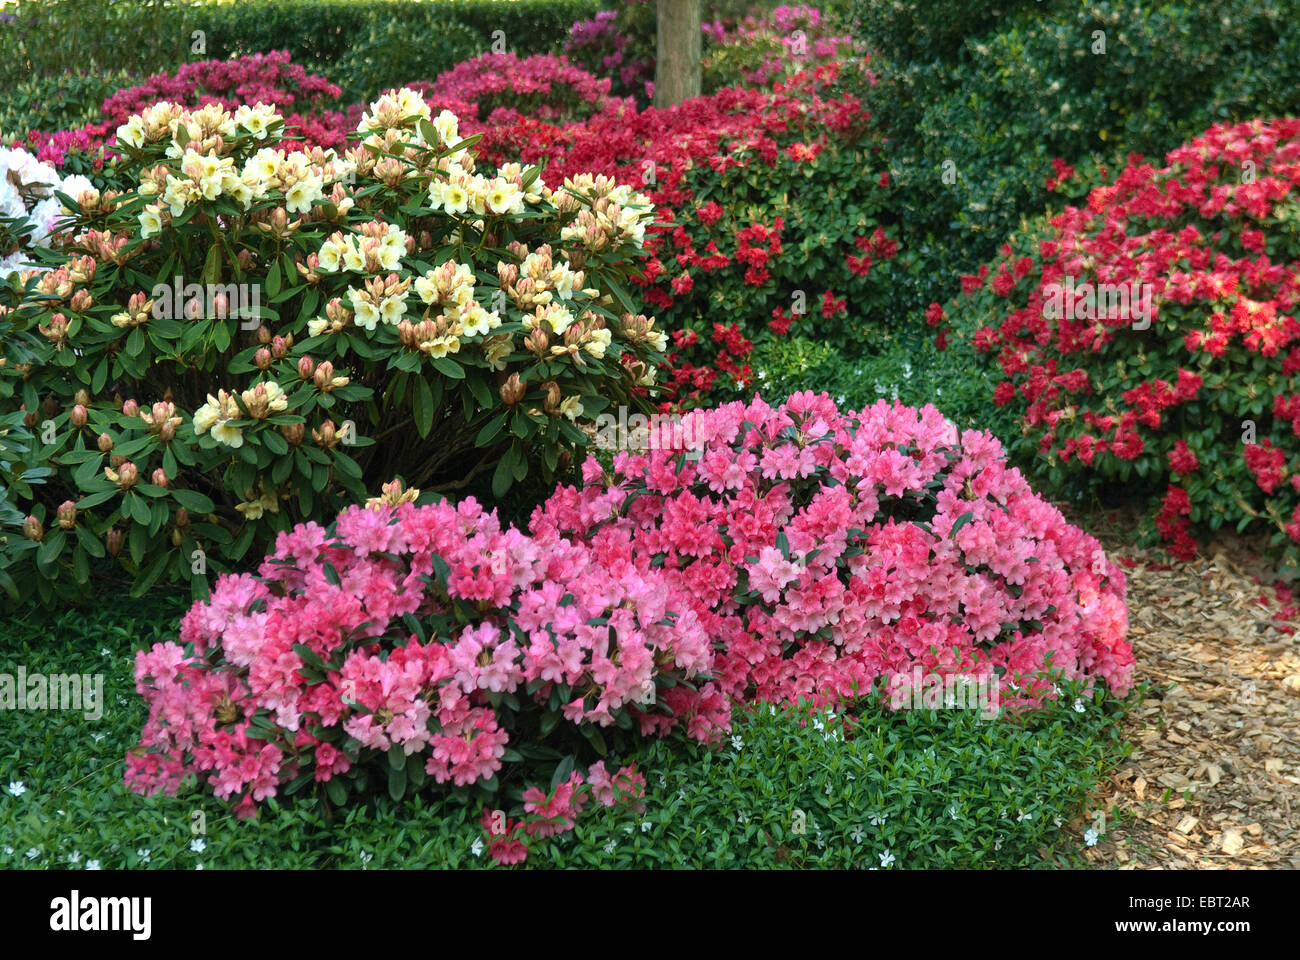 Rhododendron (Rhododendron spec.), différentes variétés de rhododendrons dans un parc Banque D'Images